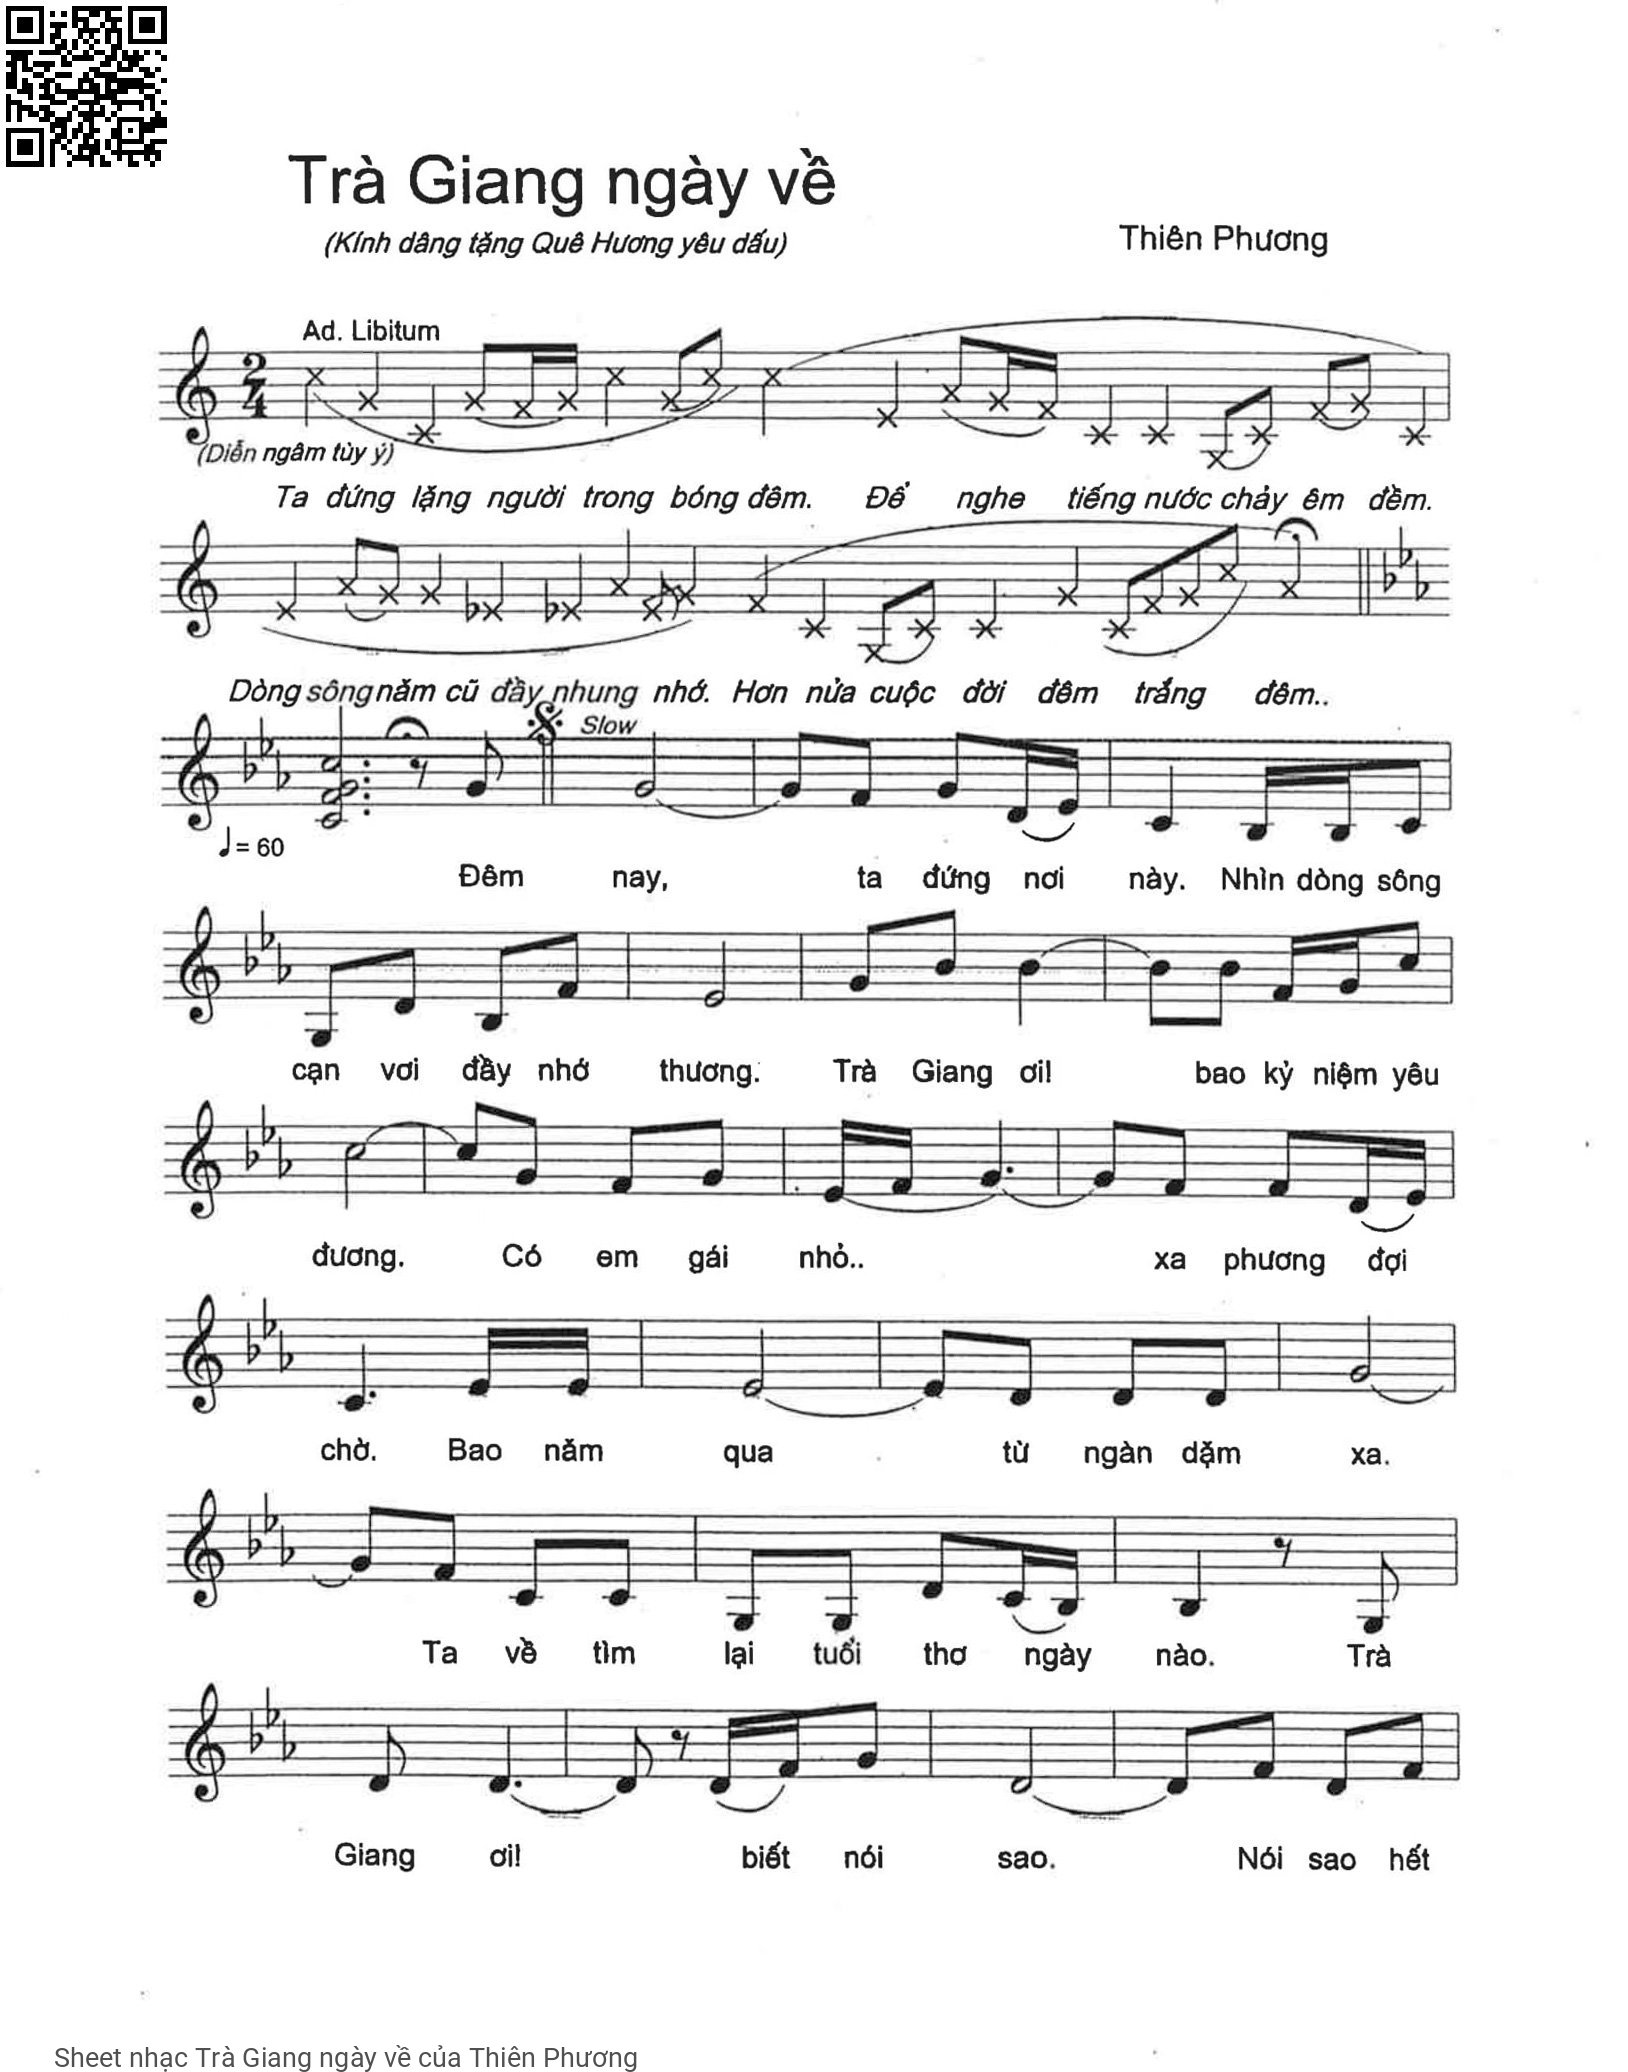 Trang 1 của Sheet nhạc PDF bài hát Trà Giang ngày về - Thiên Phương